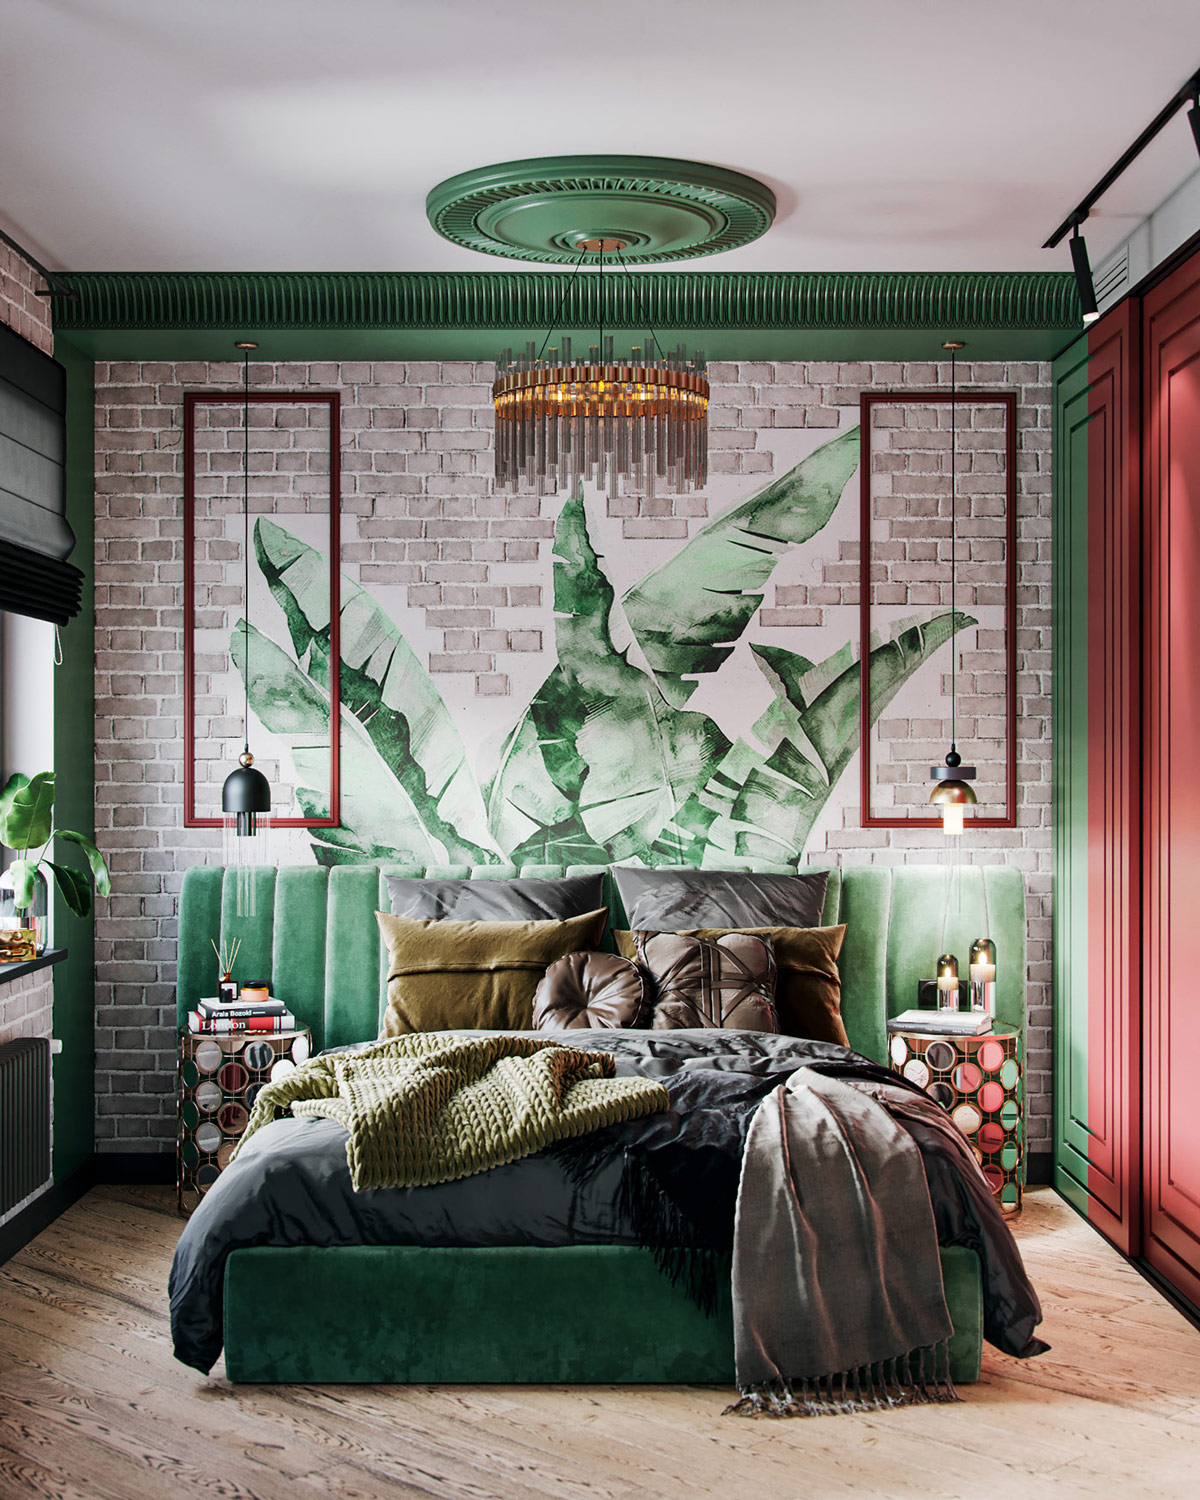 Hình ảnh phòng ngủ với giường màu xanh lá cùng tông với tường lá cây, đèn chùm, cửa sổ kính